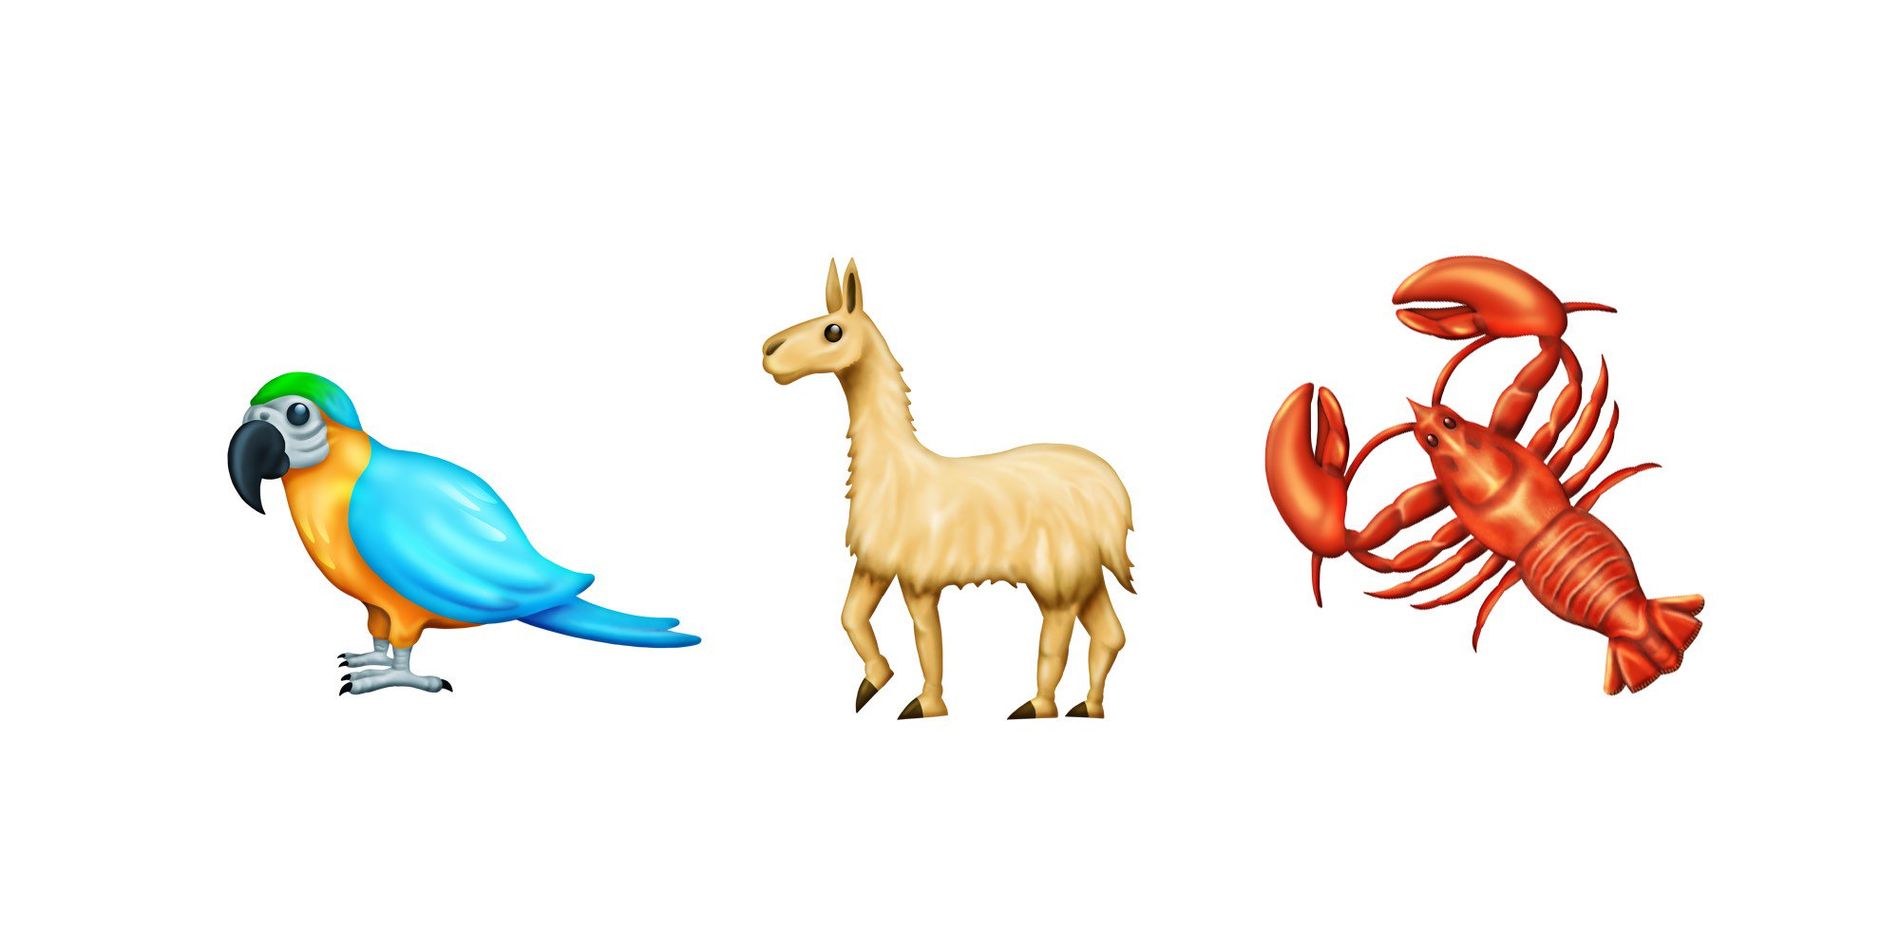 Papegøye, lama eller hummer? Disse ikonene finner du i den nyeste oppdateringen av emojier.